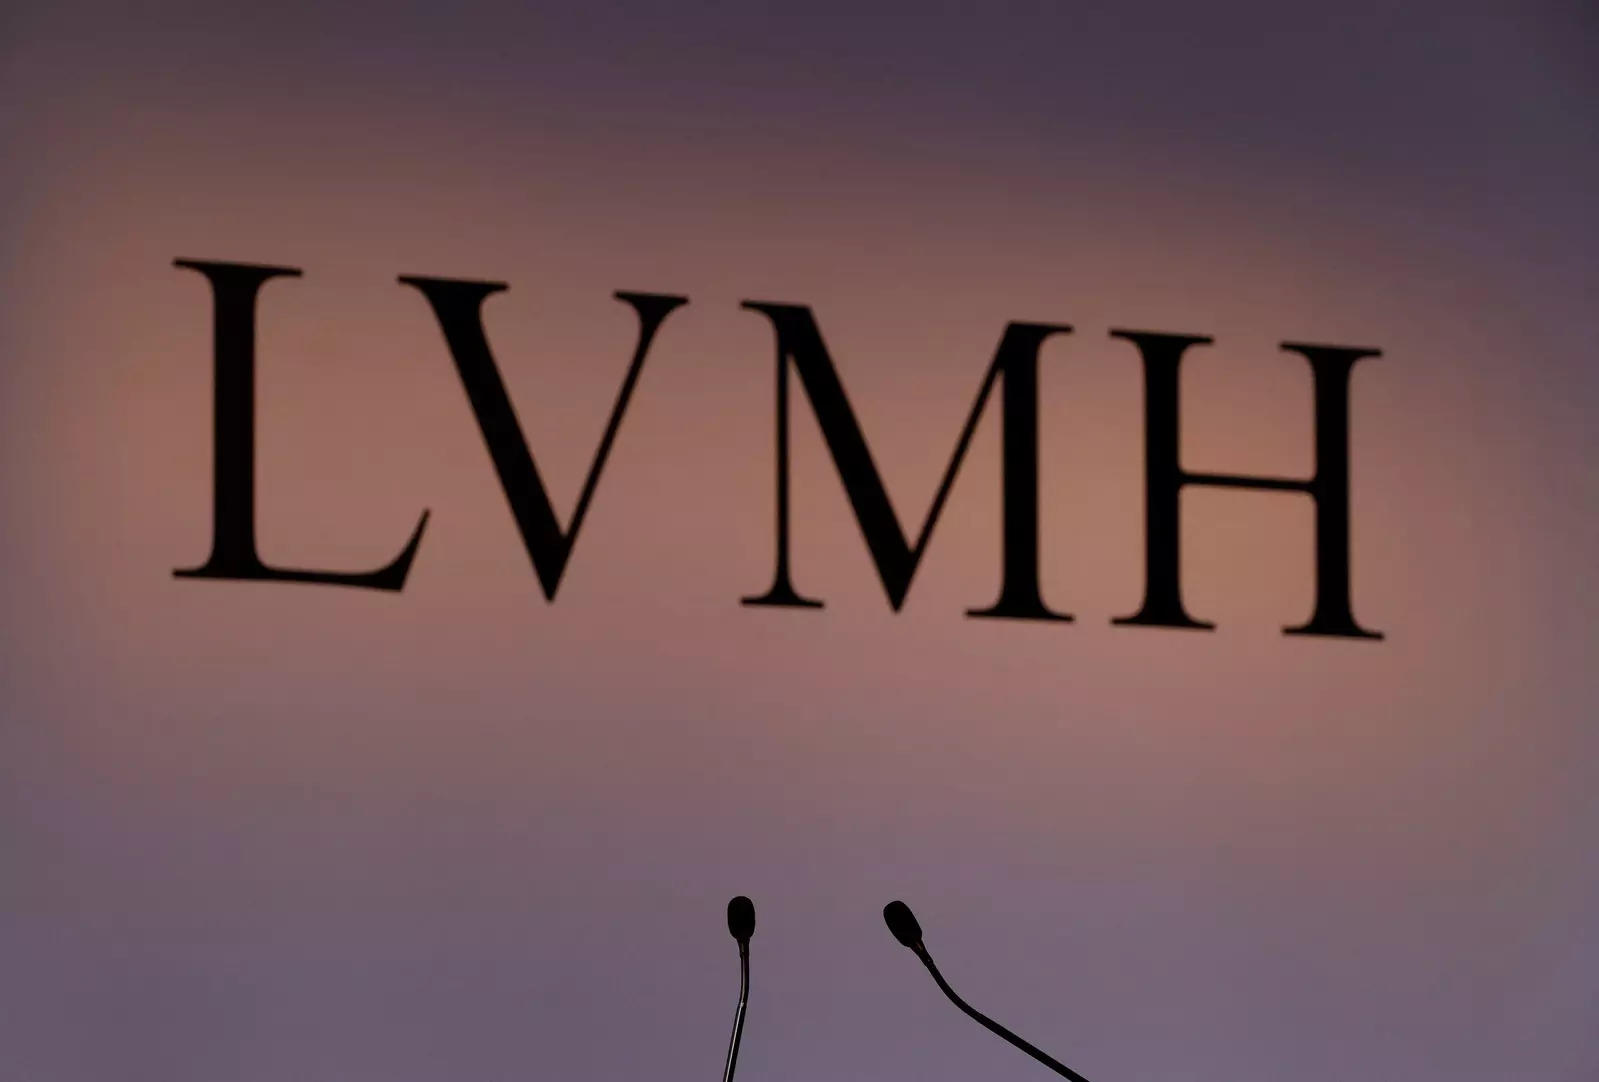 Louis Vuitton's Shanghai Store Broke Sales Records Despite